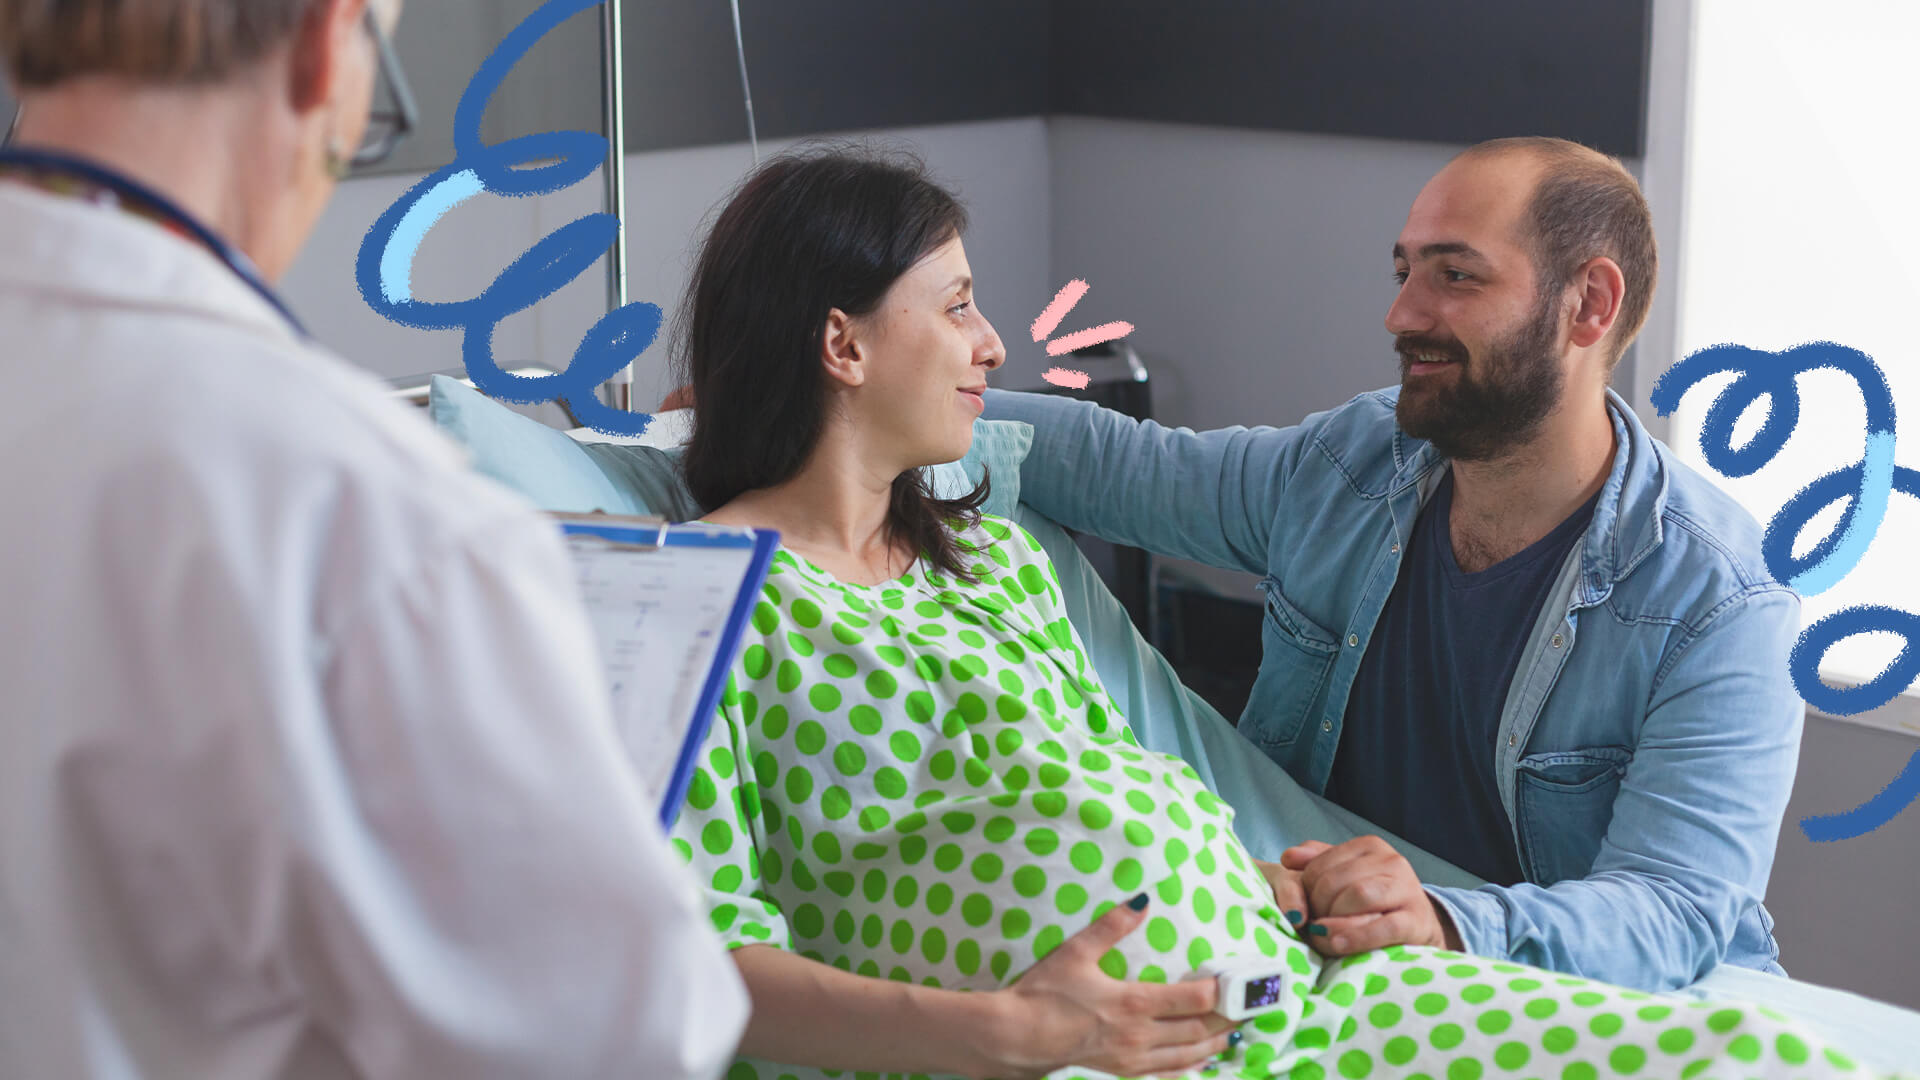 Um casal composto por uma mulher e um homem, brancos, olham um para o outro e sorriem. A mulher está grávida e vestida com um avental hospitalar, sentada em uma cama. A foto ilustra matéria sobre HIV na gravidez.